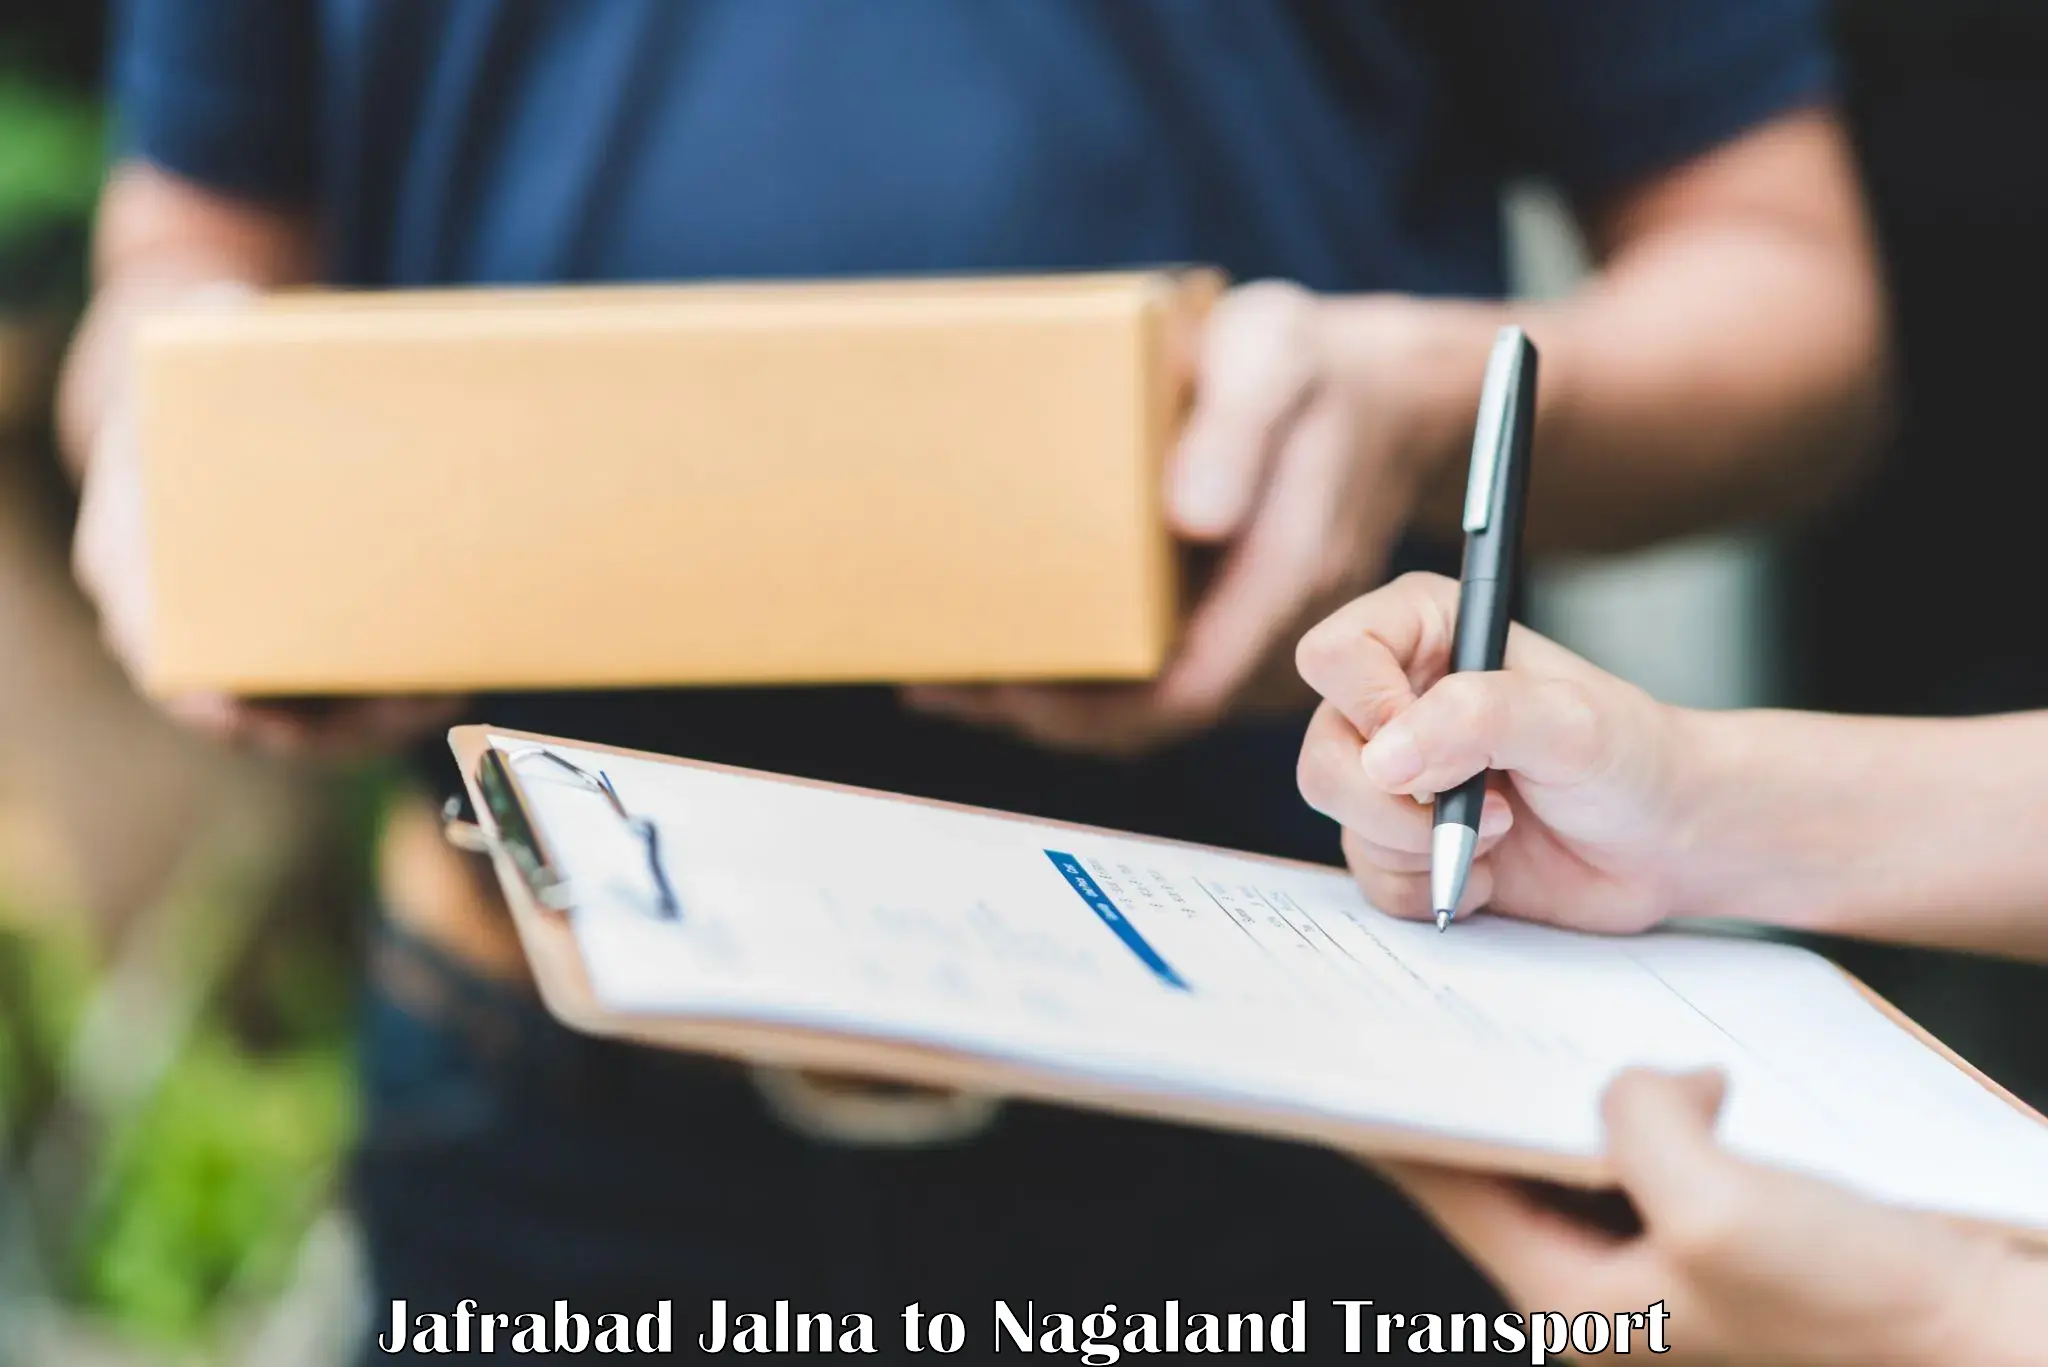 Nearby transport service Jafrabad Jalna to NIT Nagaland